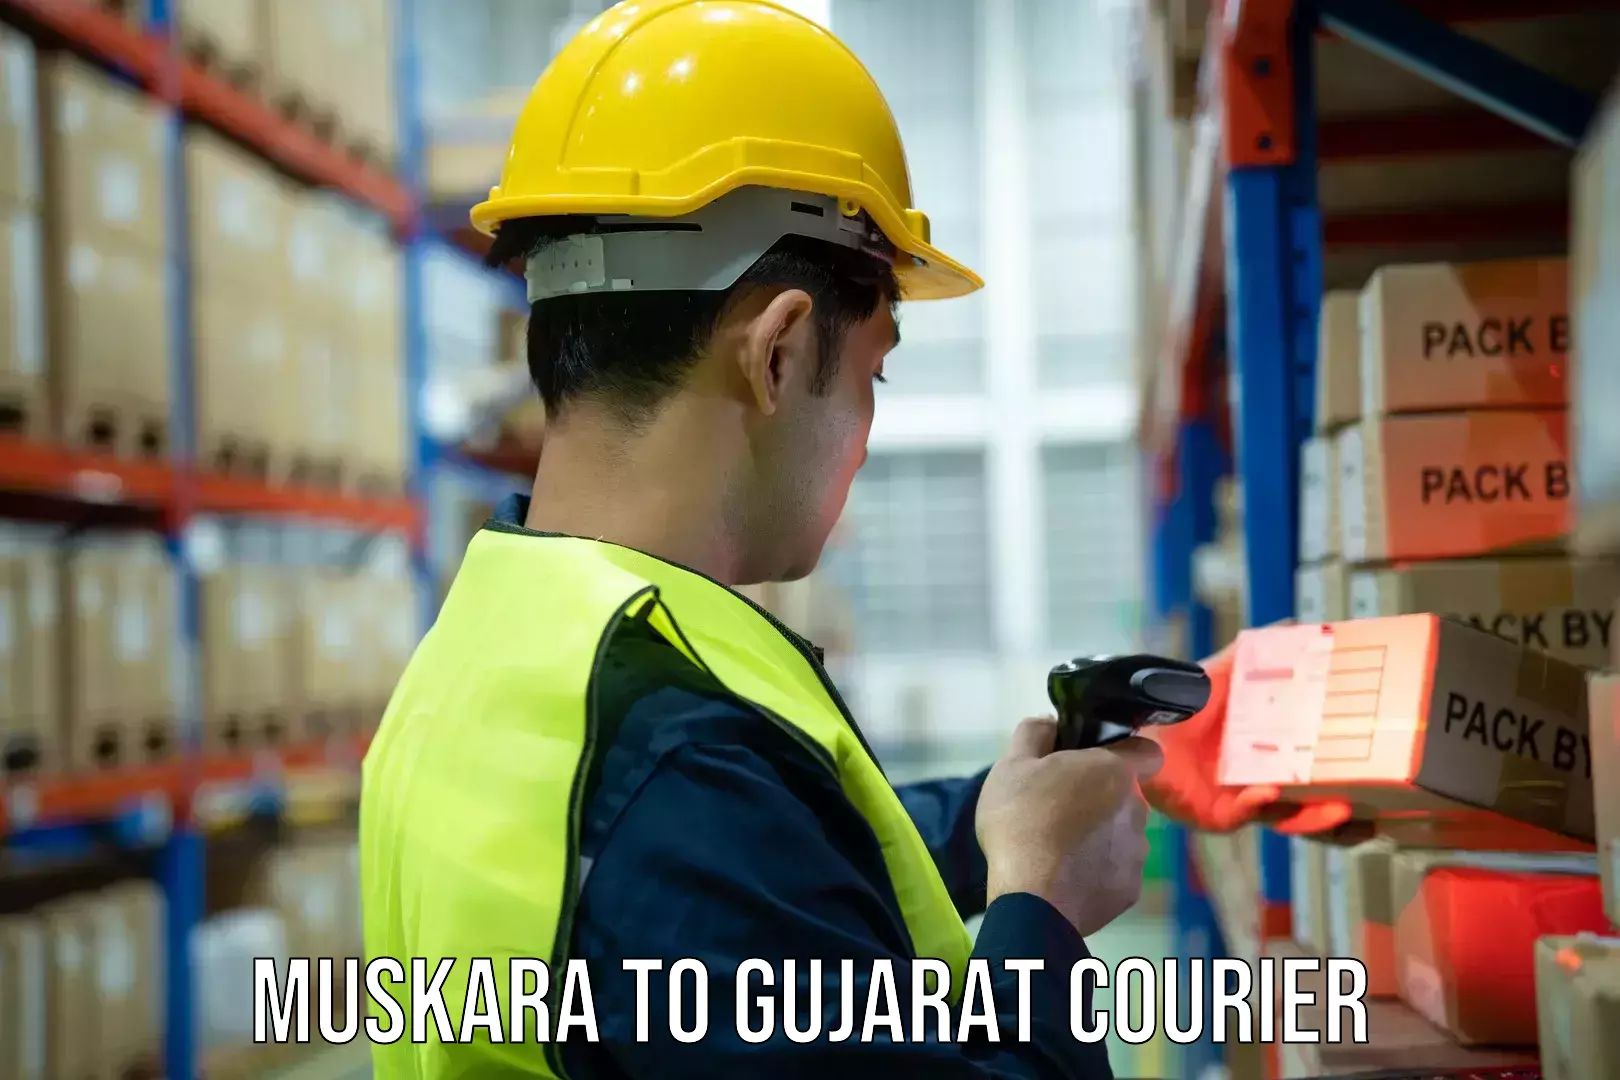 Modern courier technology Muskara to Gujarat